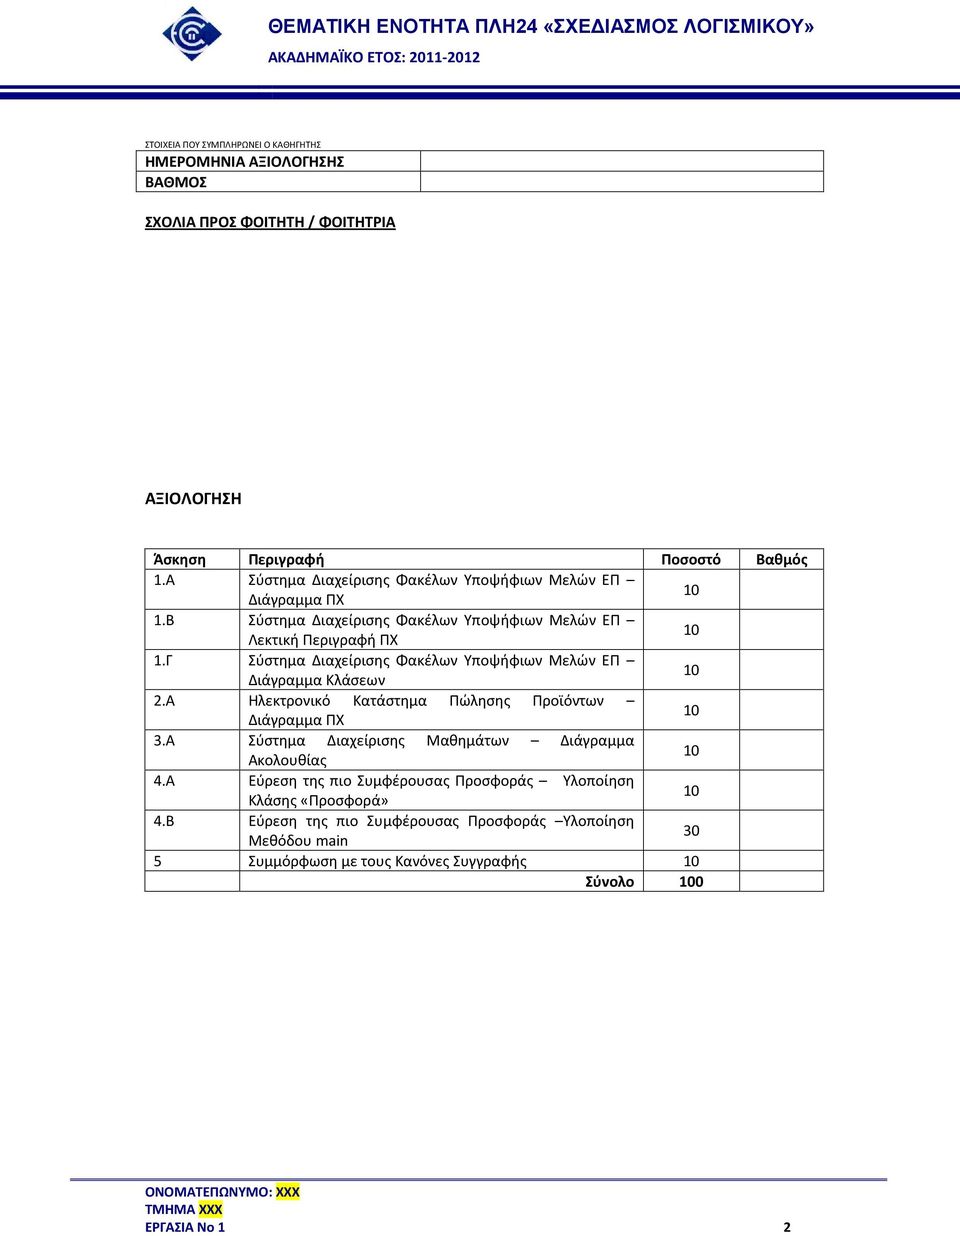 Γ Σύστημα Διαχείρισης Φακέλων Υποψήφιων Μελών ΕΠ Διάγραμμα Κλάσεων 2.Α Ηλεκτρονικό Κατάστημα Πώλησης Προϊόντων Διάγραμμα ΠΧ 3.